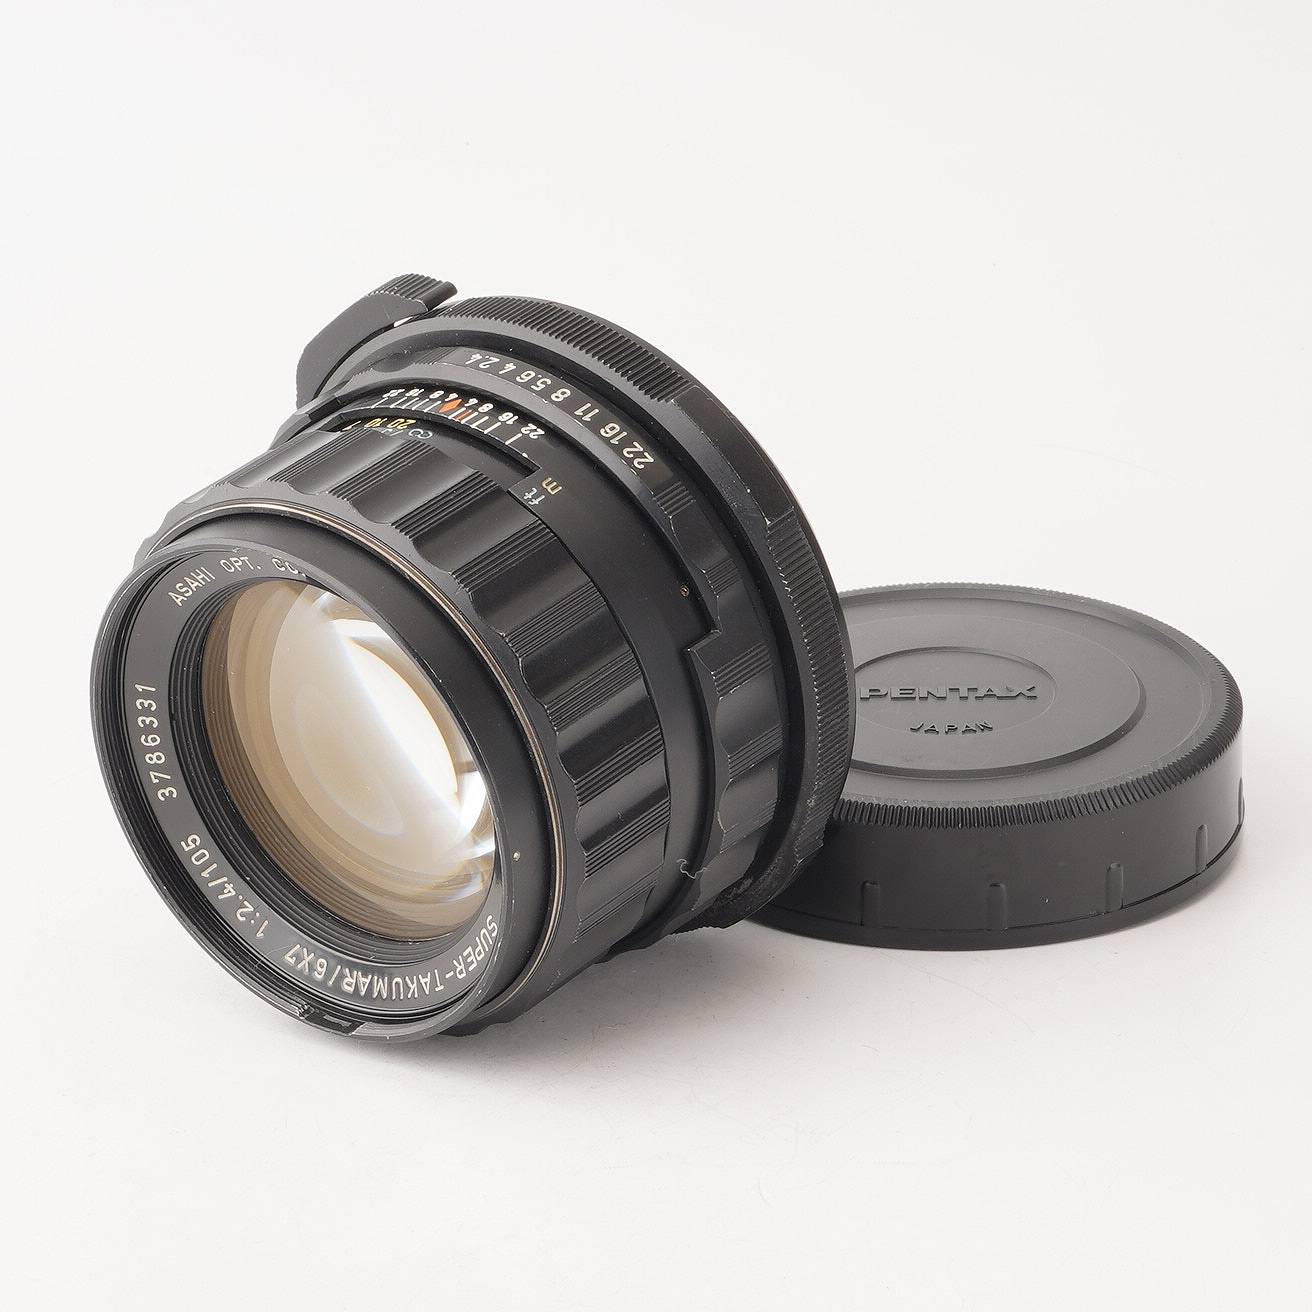 ペンタックス SUPER TAKUMAR 6X7 105mm F2.4 - カメラ、光学機器